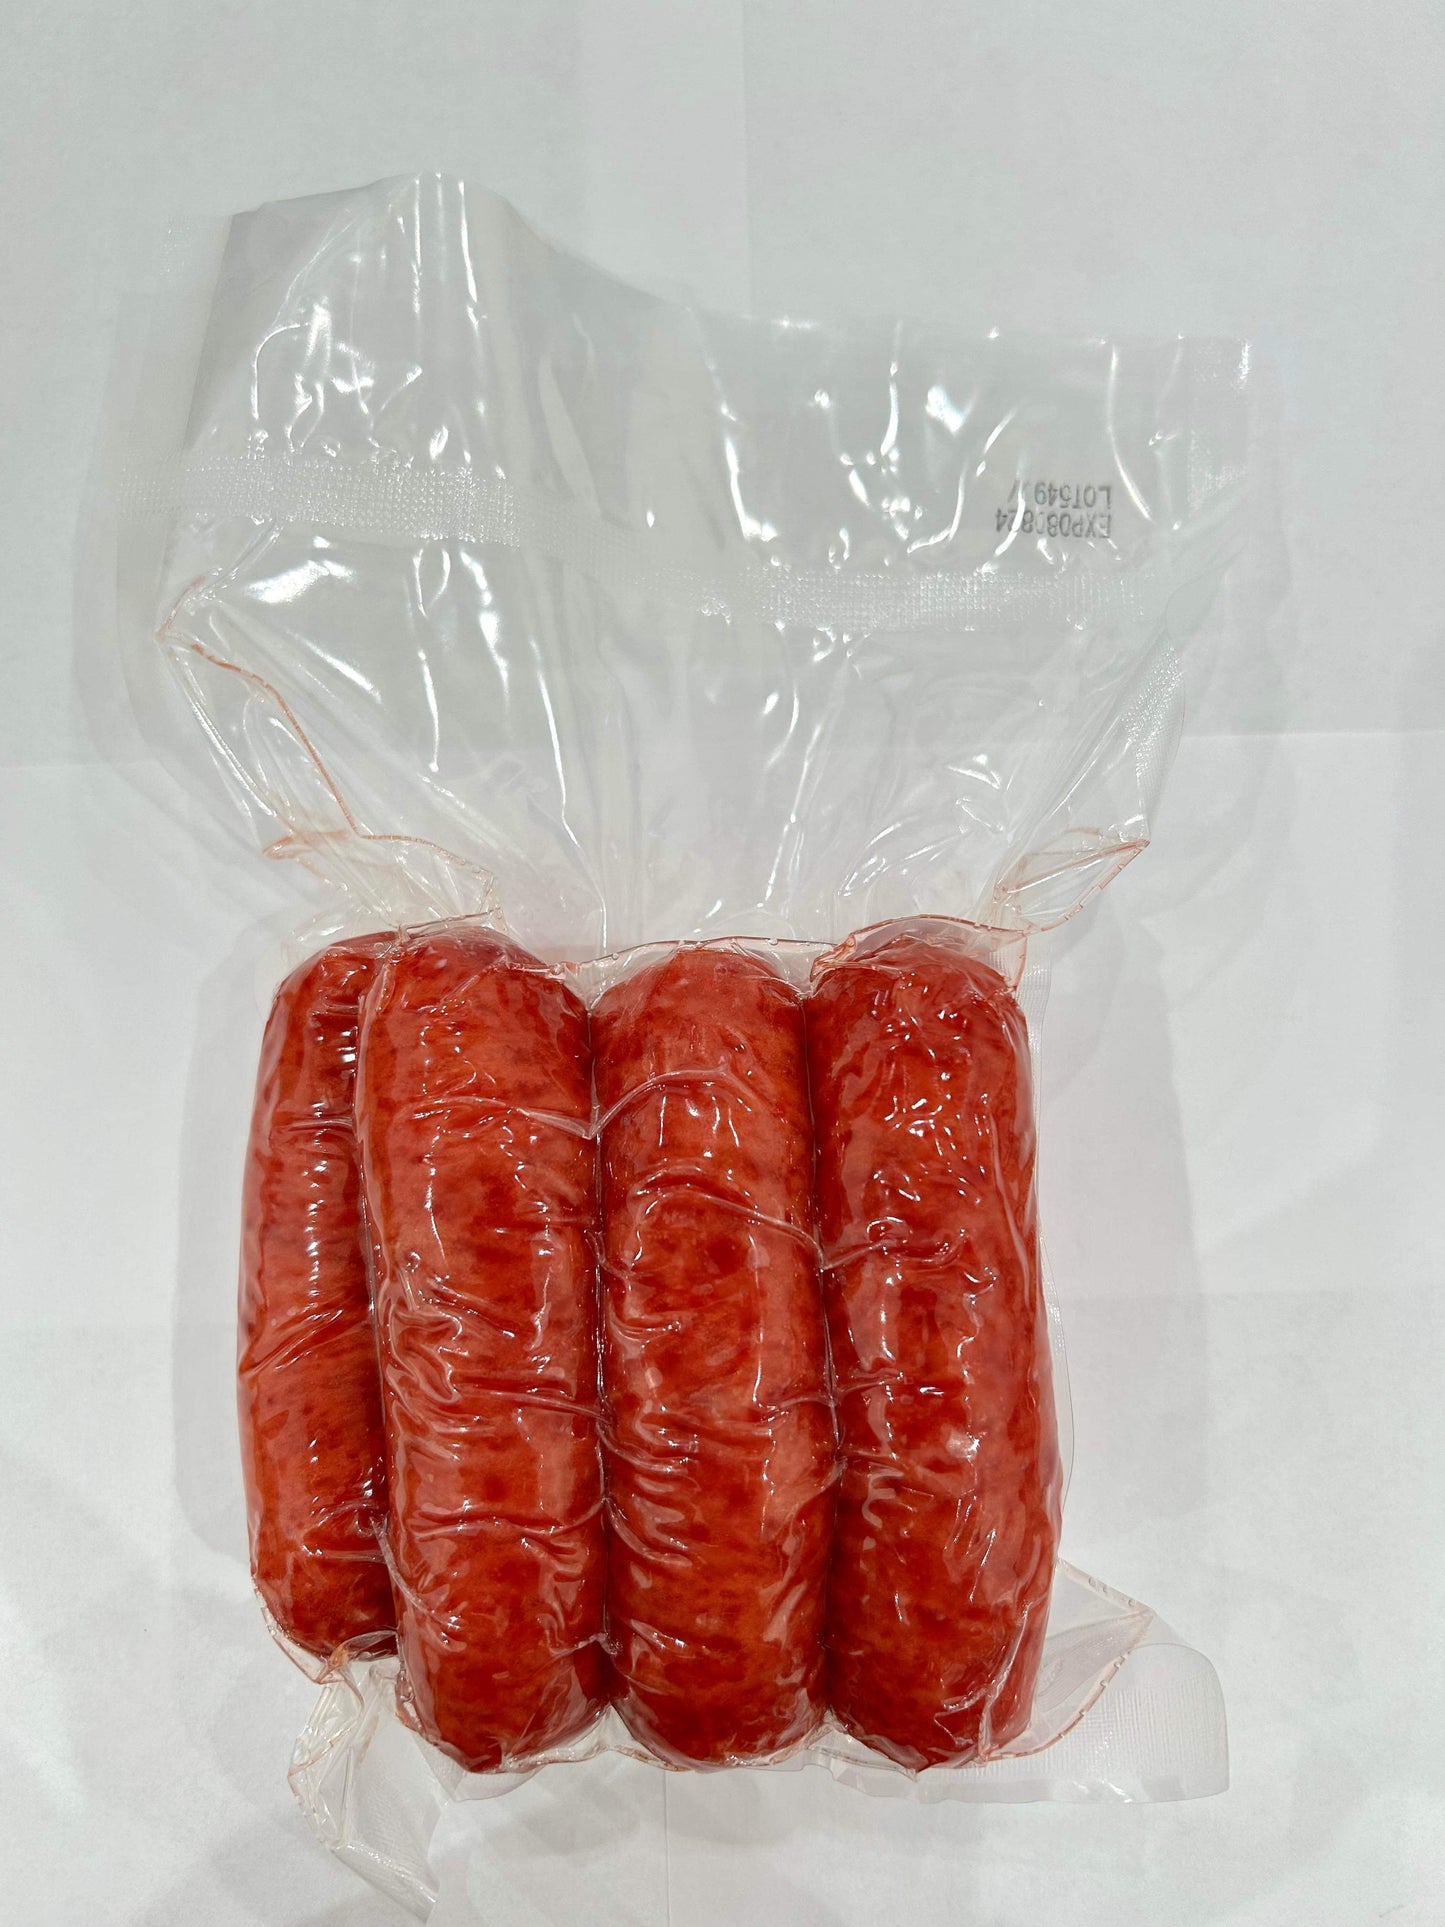 Lạp Xưởng Mai Quế Lộ Heo & Tôm Houston 16 oz | Houston Pork and Shrimp Sausage